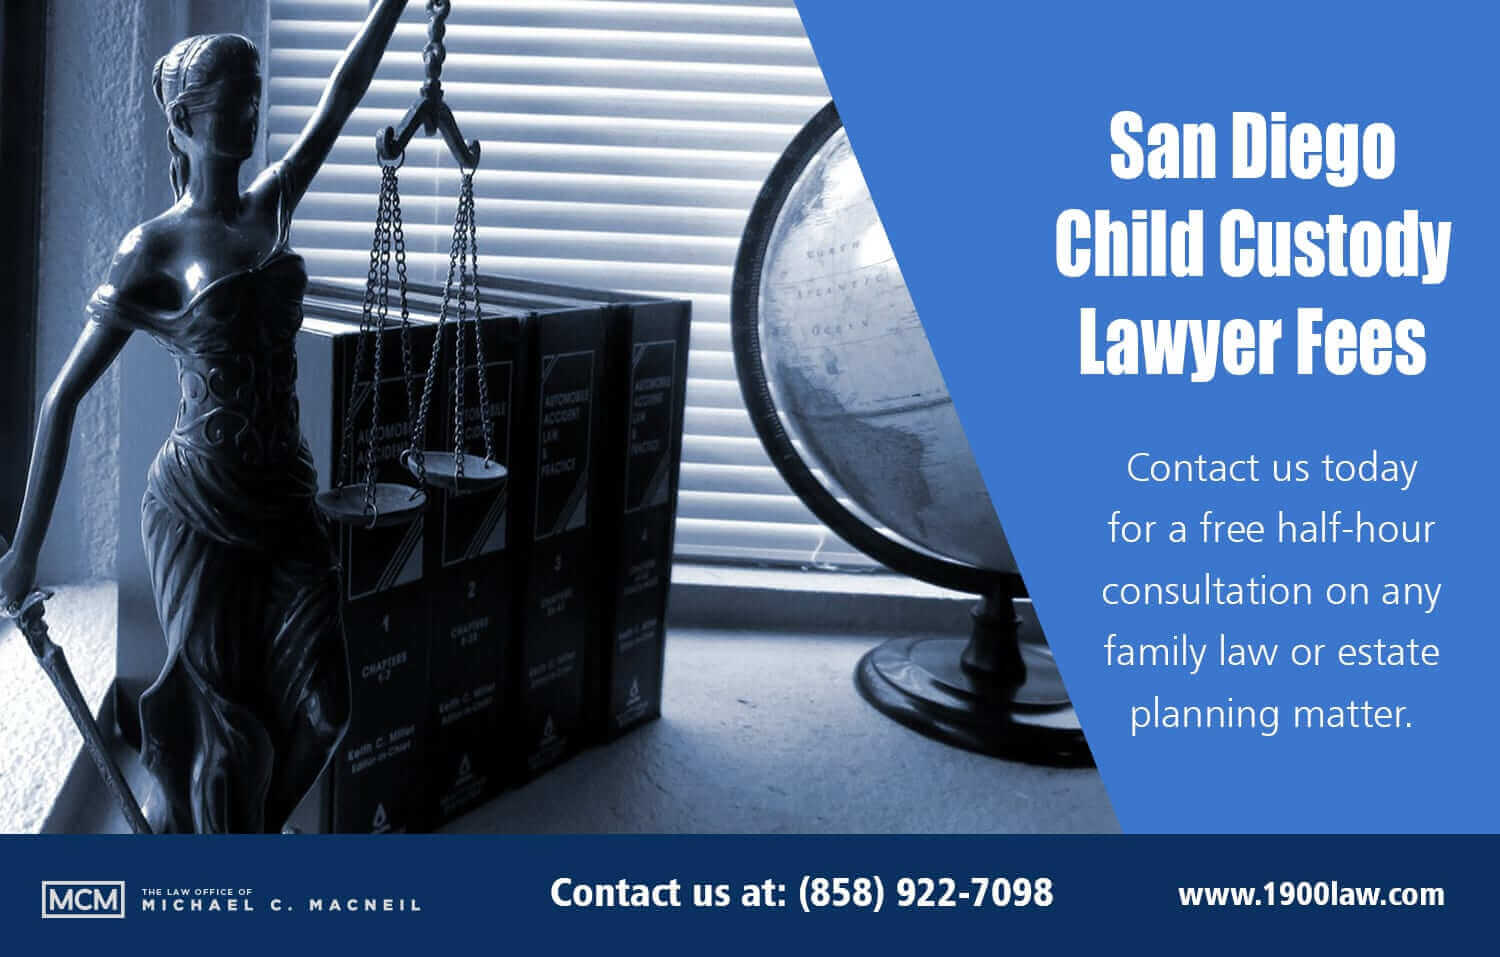 San Diego Child Custody Lawyer Fees